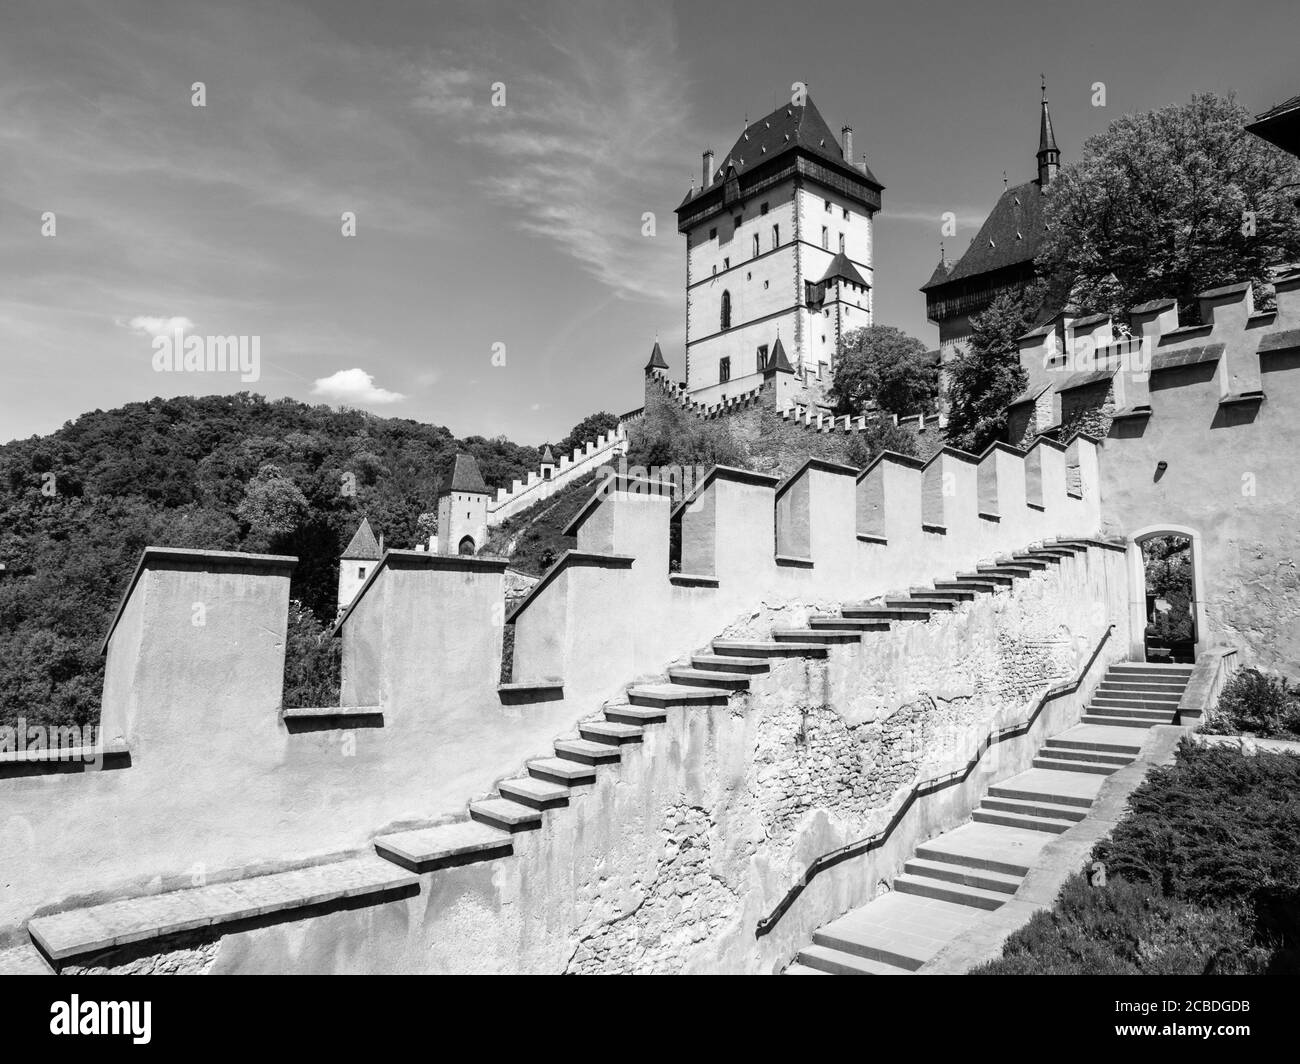 Grande Torre del Castello reale di Kalstejn, castello gotico nella Boemia Centrale, Repubblica Ceca, immagine in bianco e nero Foto Stock